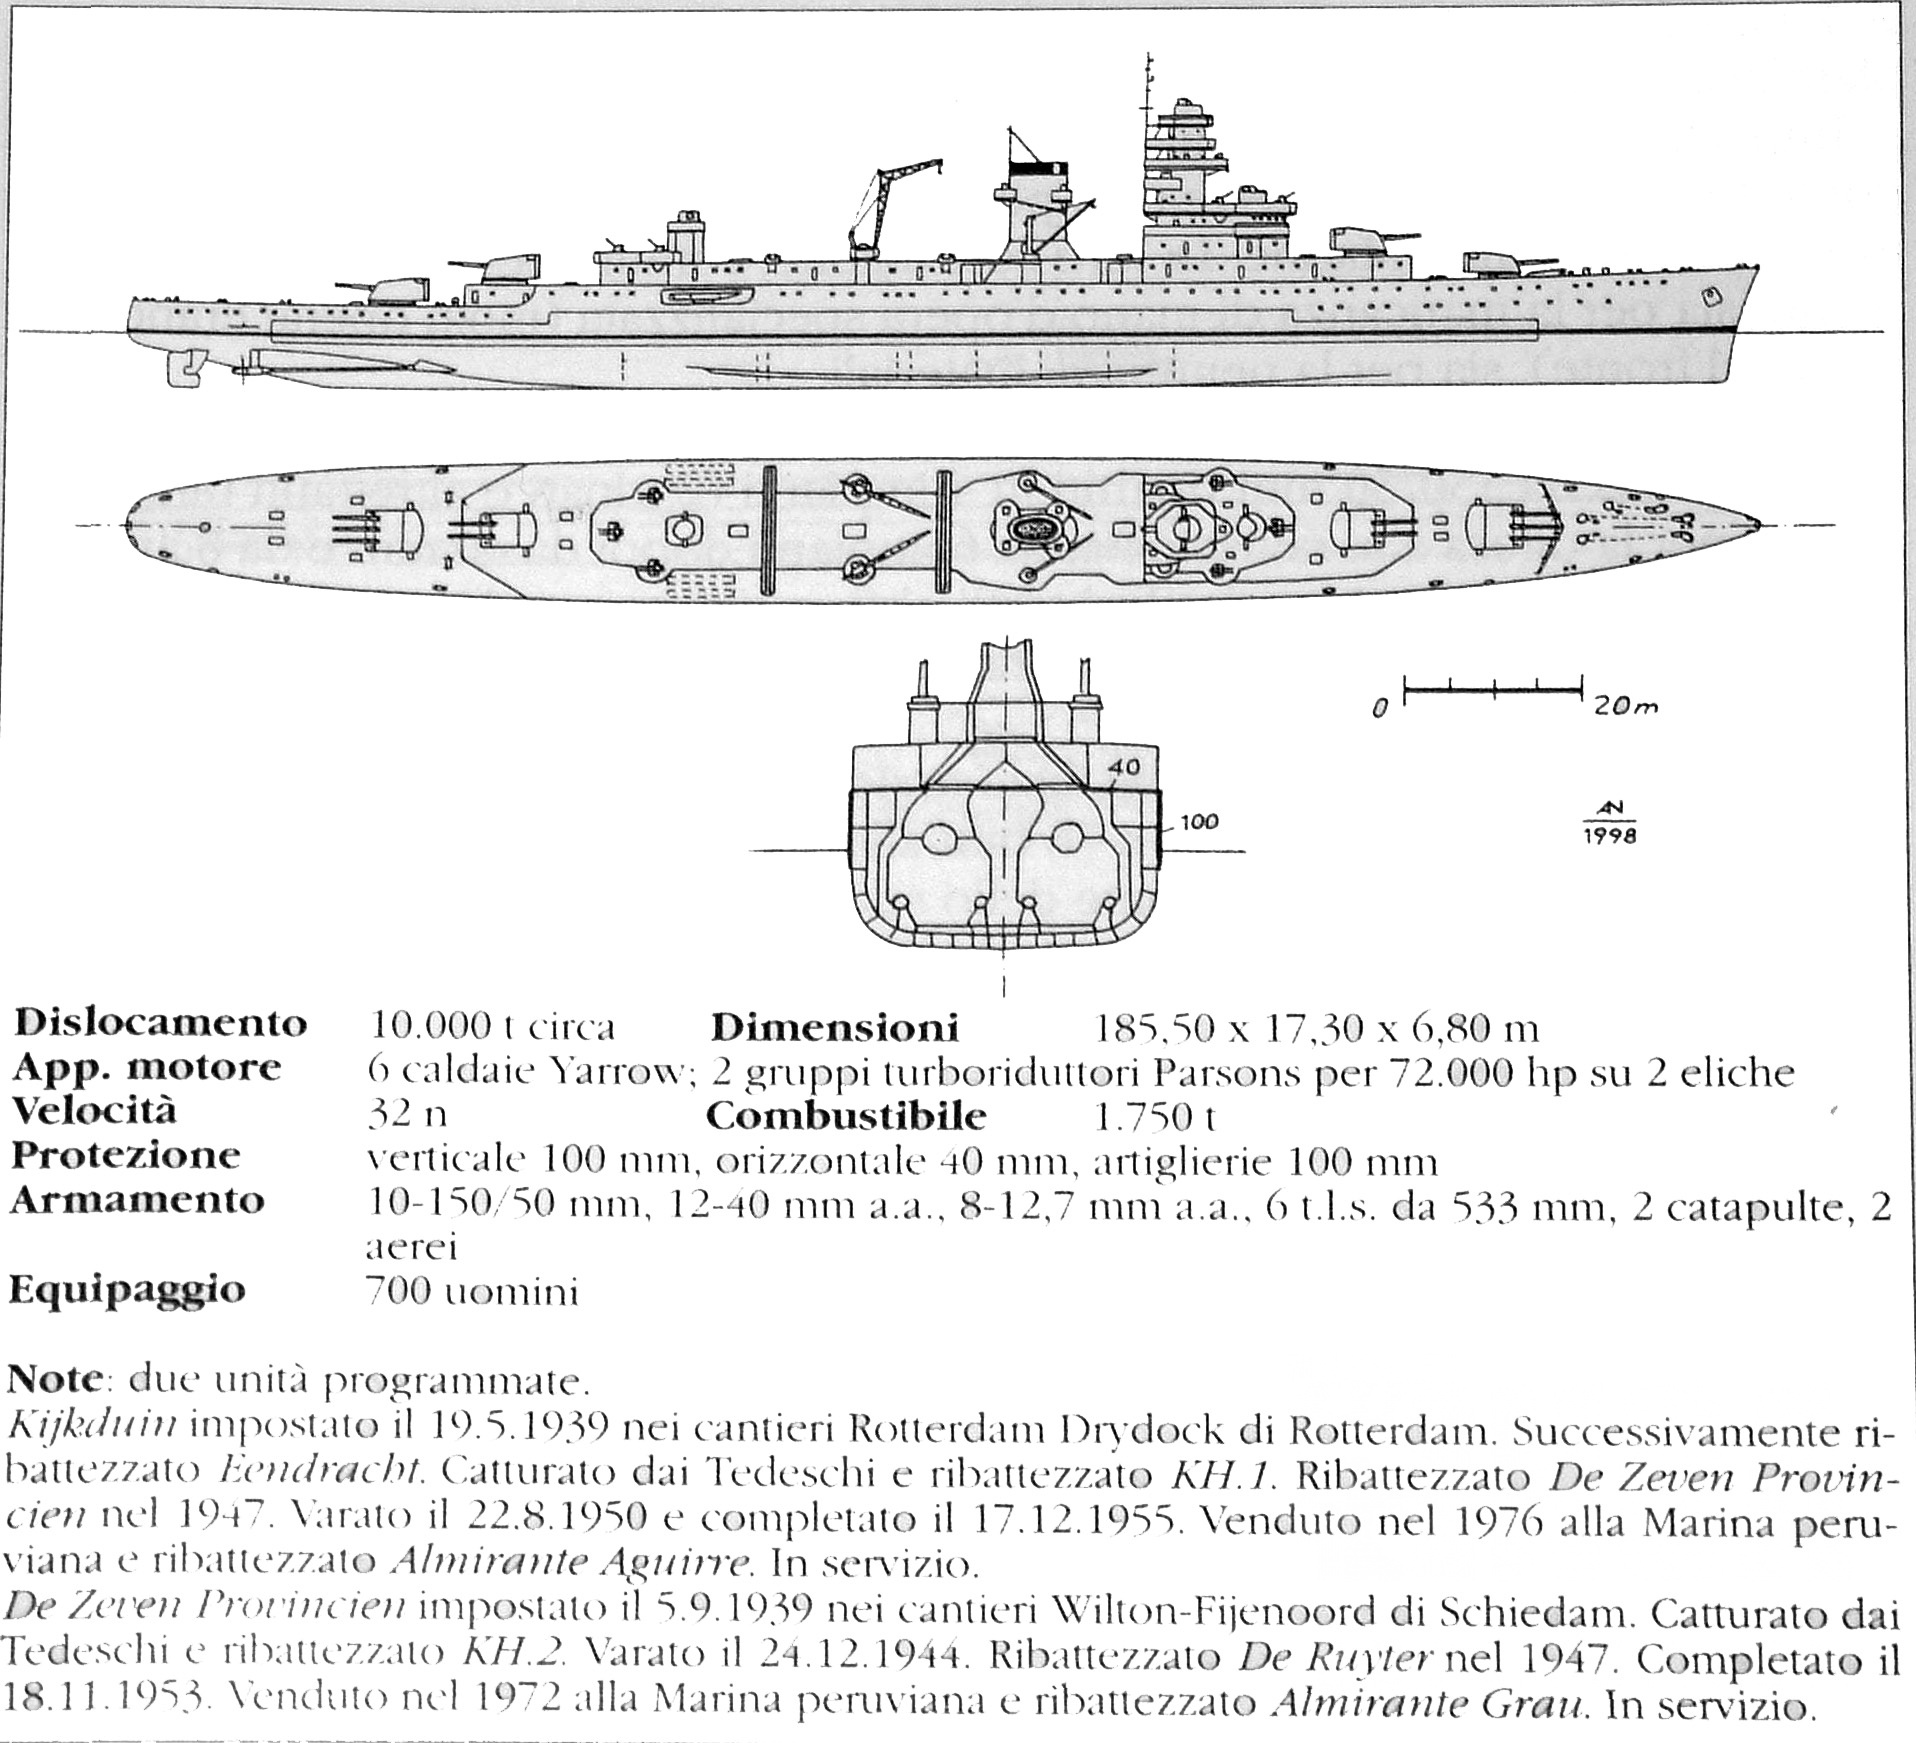 作战目标也是日本的10炮重巡···) 然后荷兰还有新的10炮轻巡洋舰